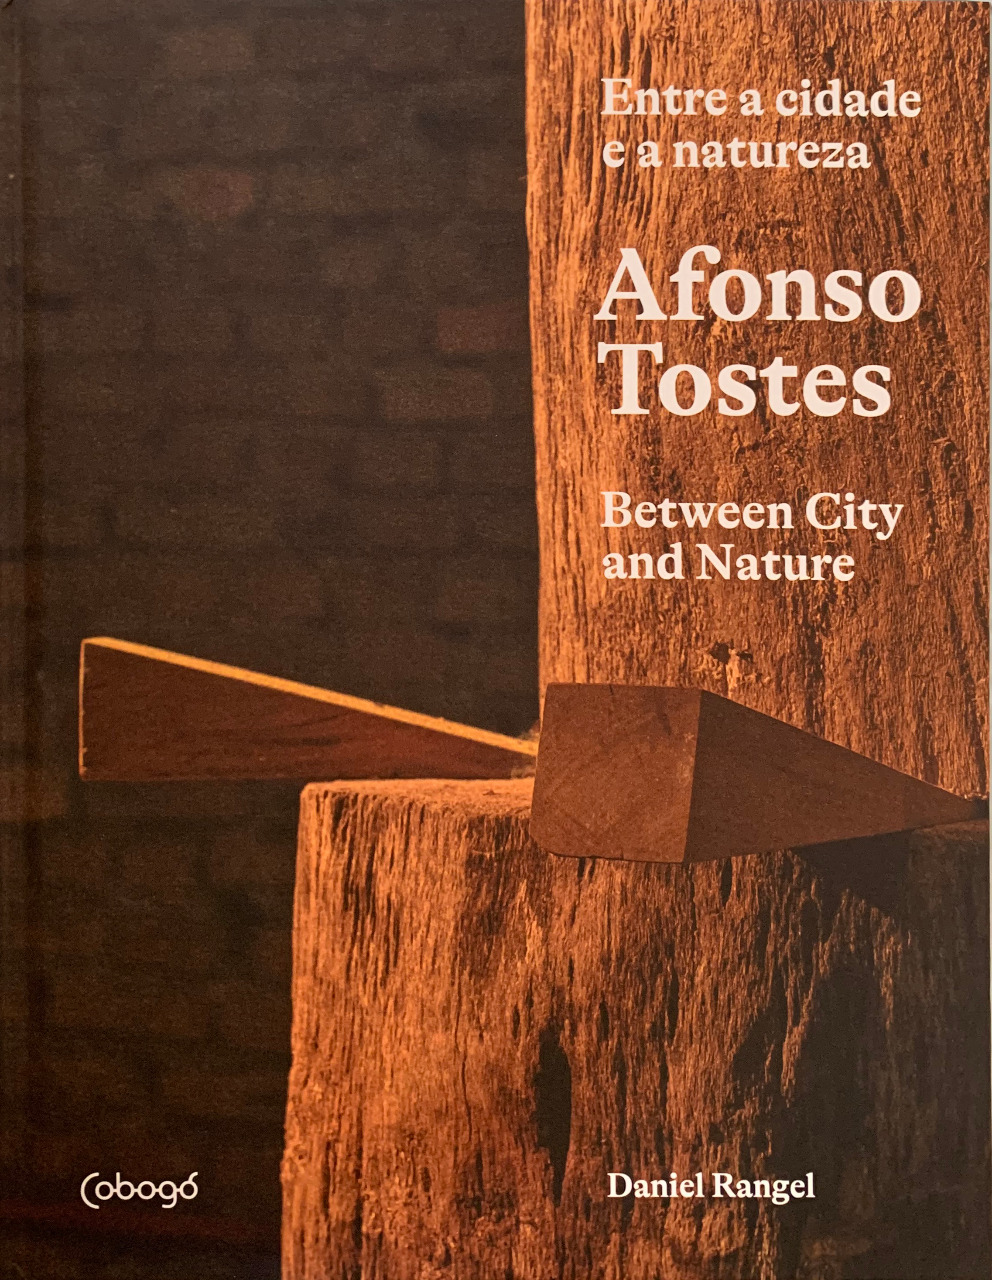 ספר "אפונסו טוסטס: בין העיר לטבע", כיסוי. גילוי.